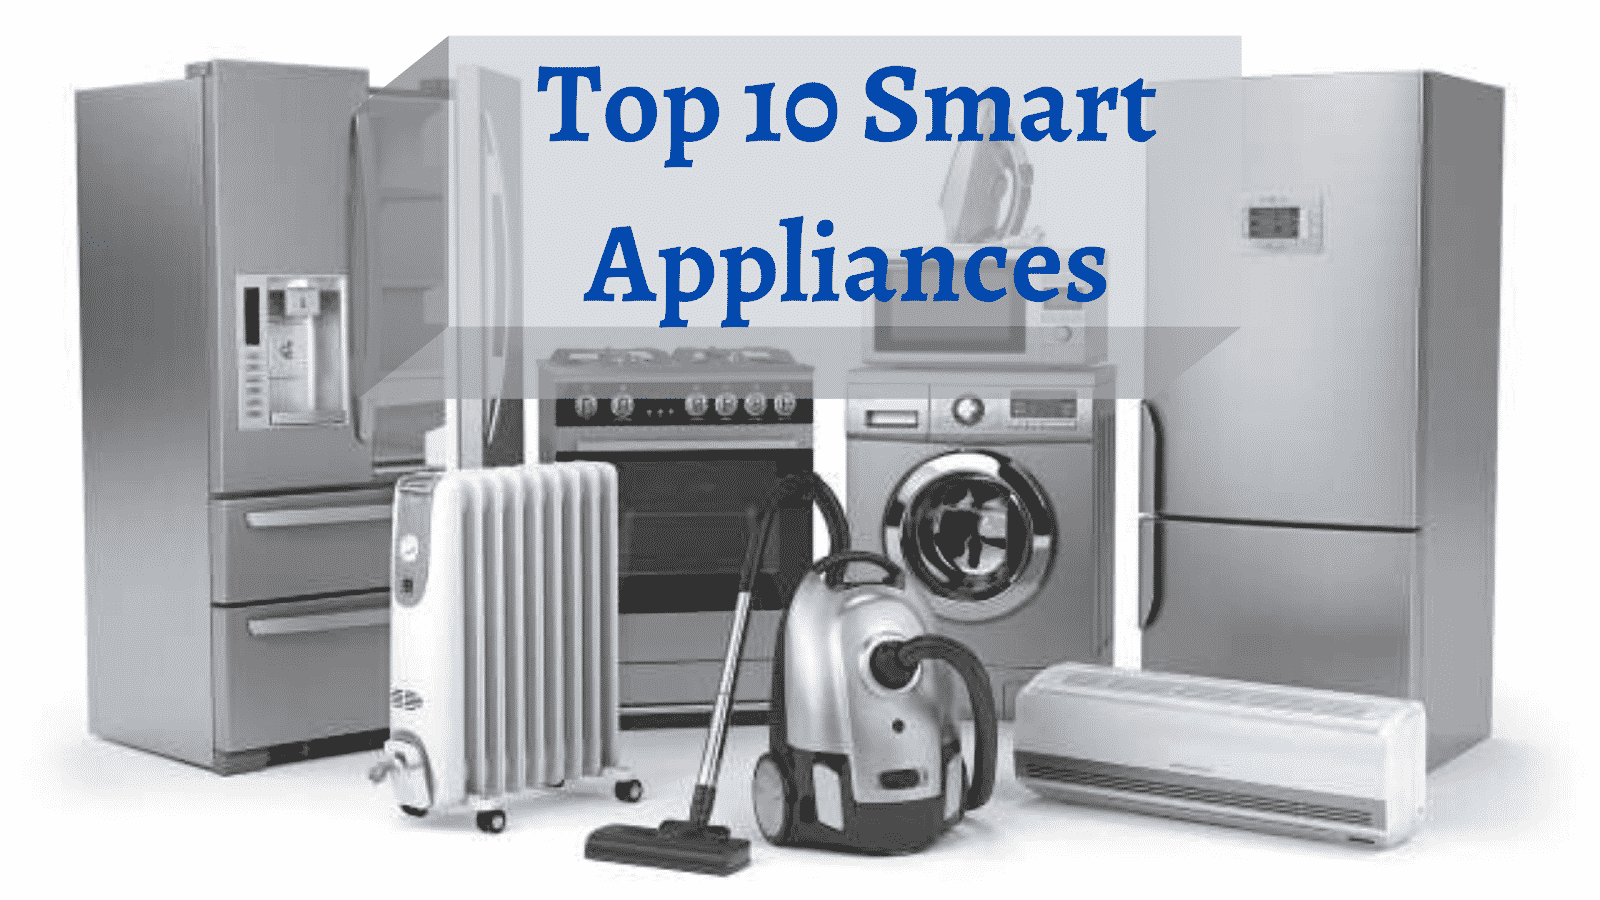 Top 10 Smart Appliances